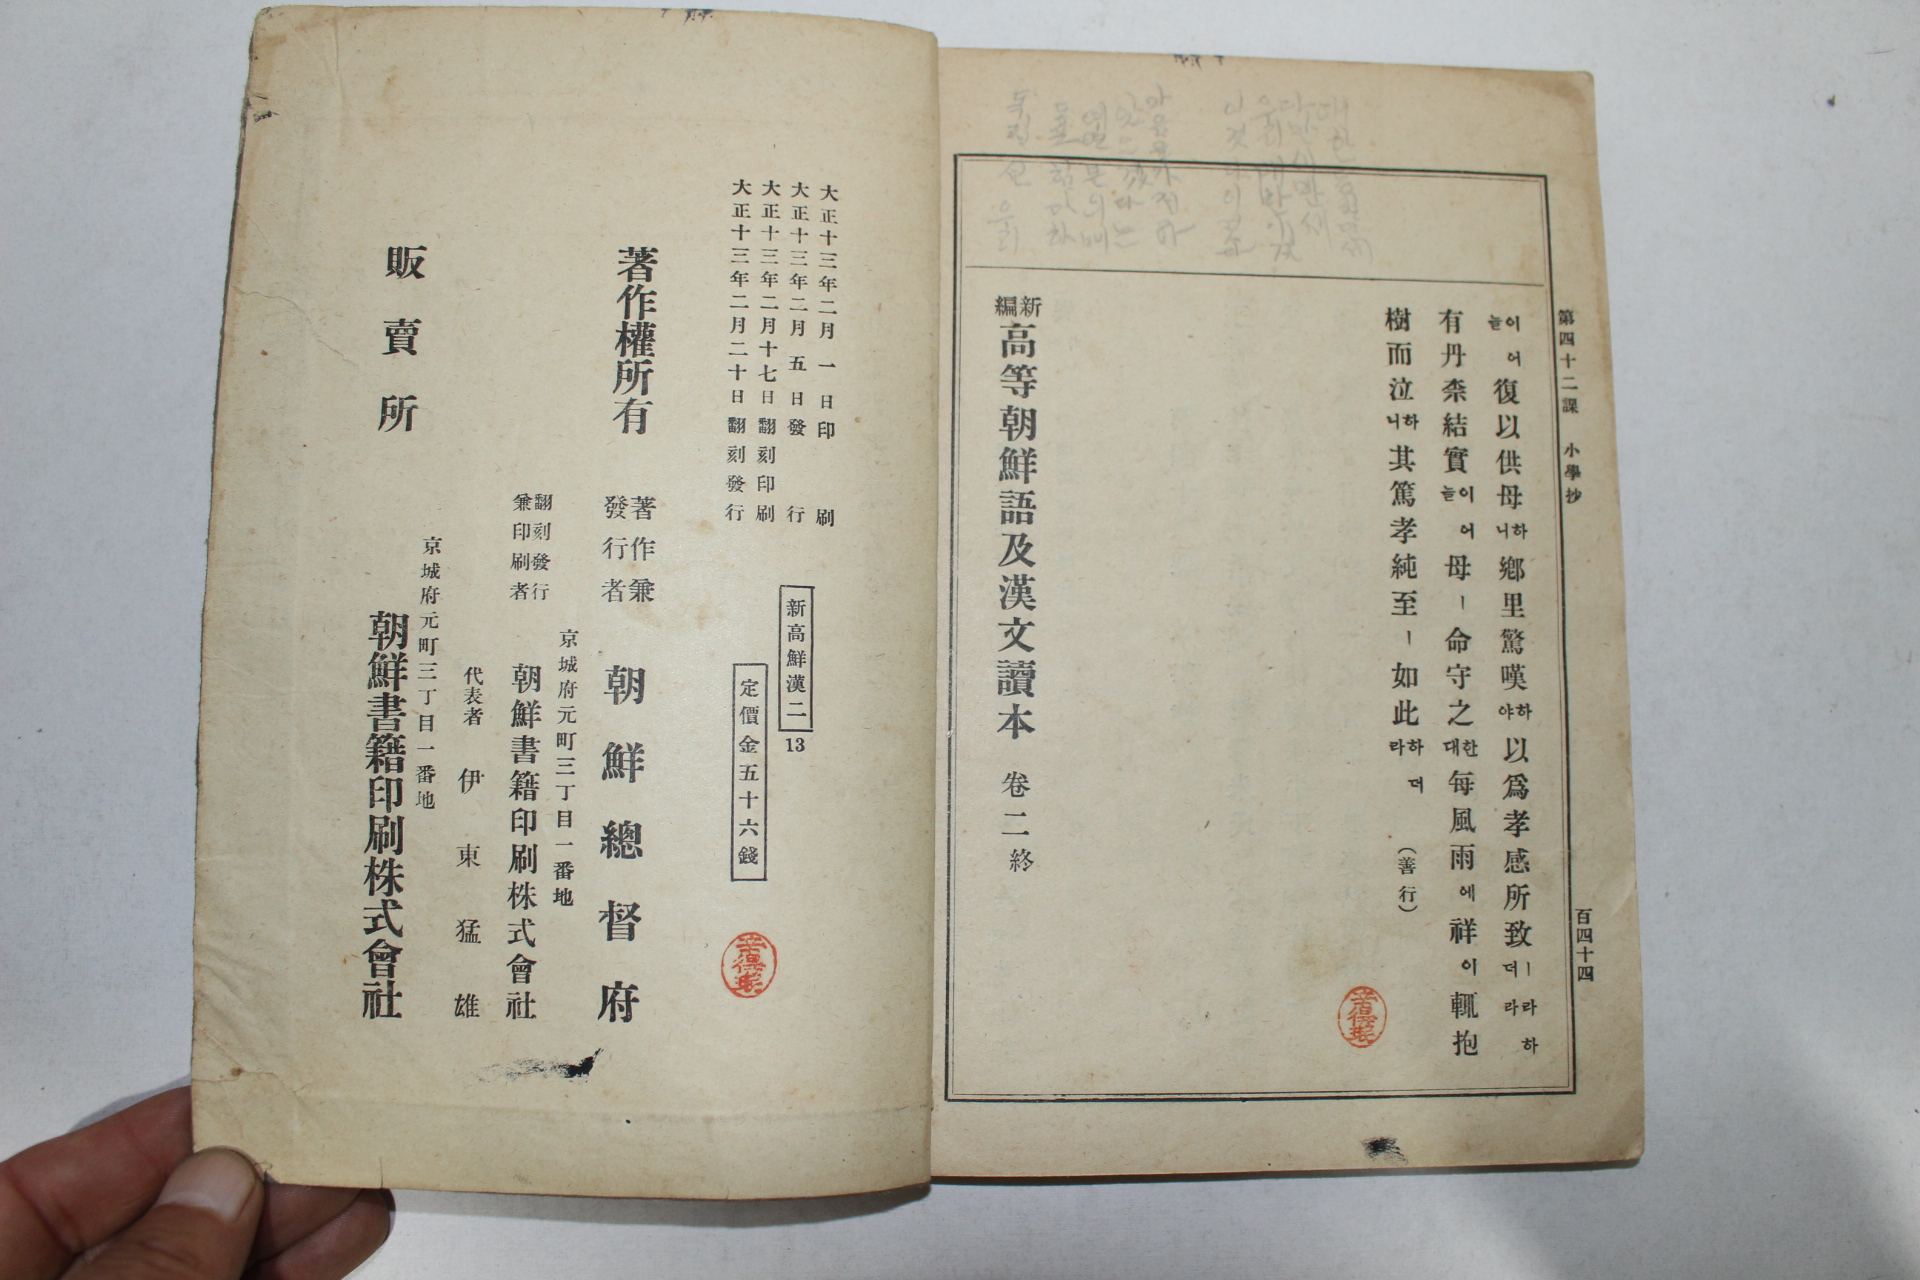 1924년(대정13년) 경성간행 신편고등조선어급한문독본 권2